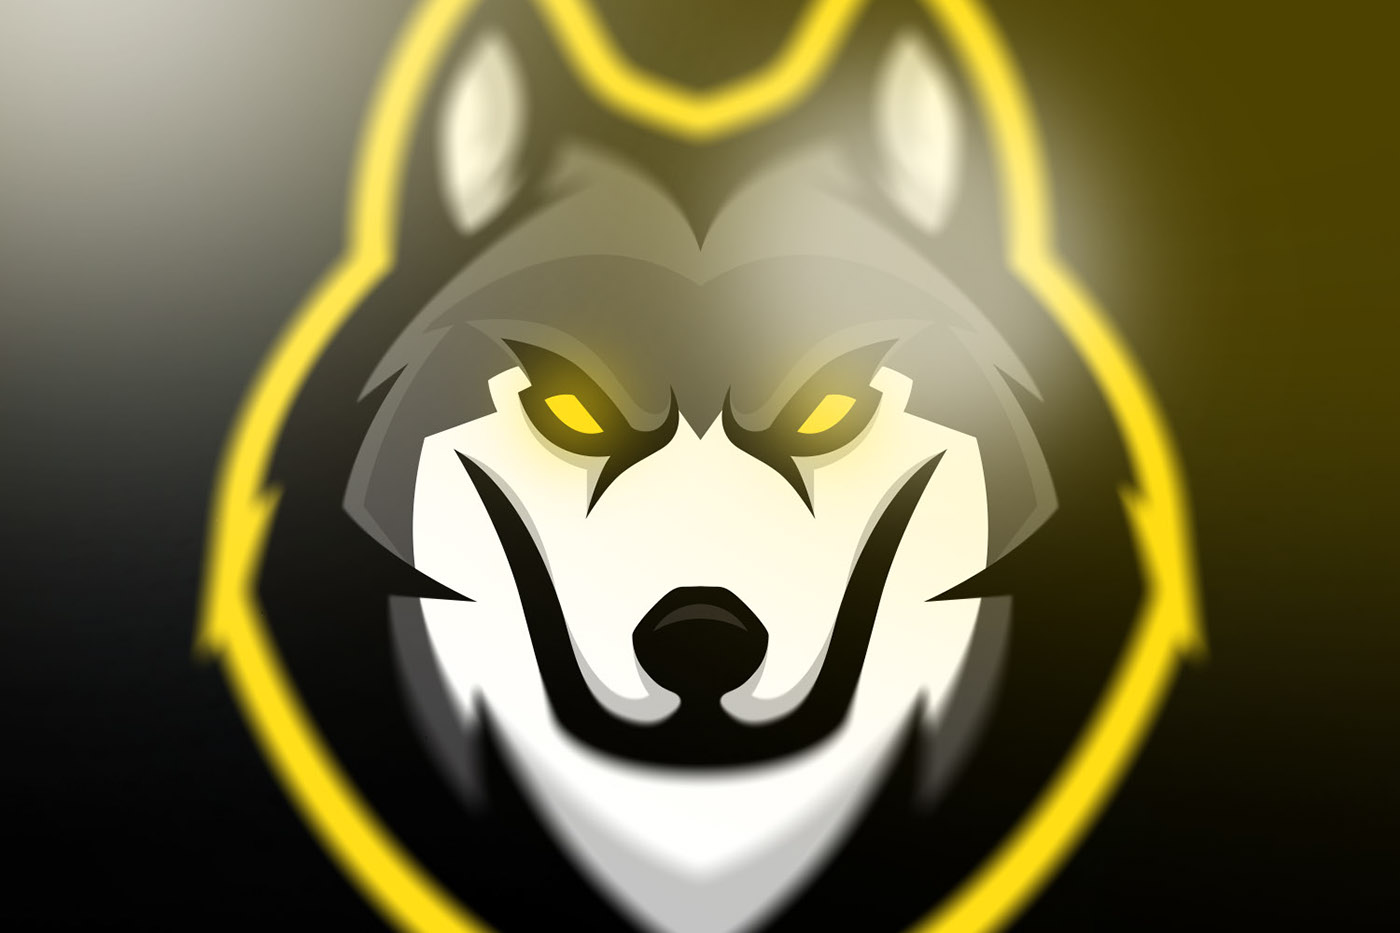 Wolves mascot logo SOLD on Behance